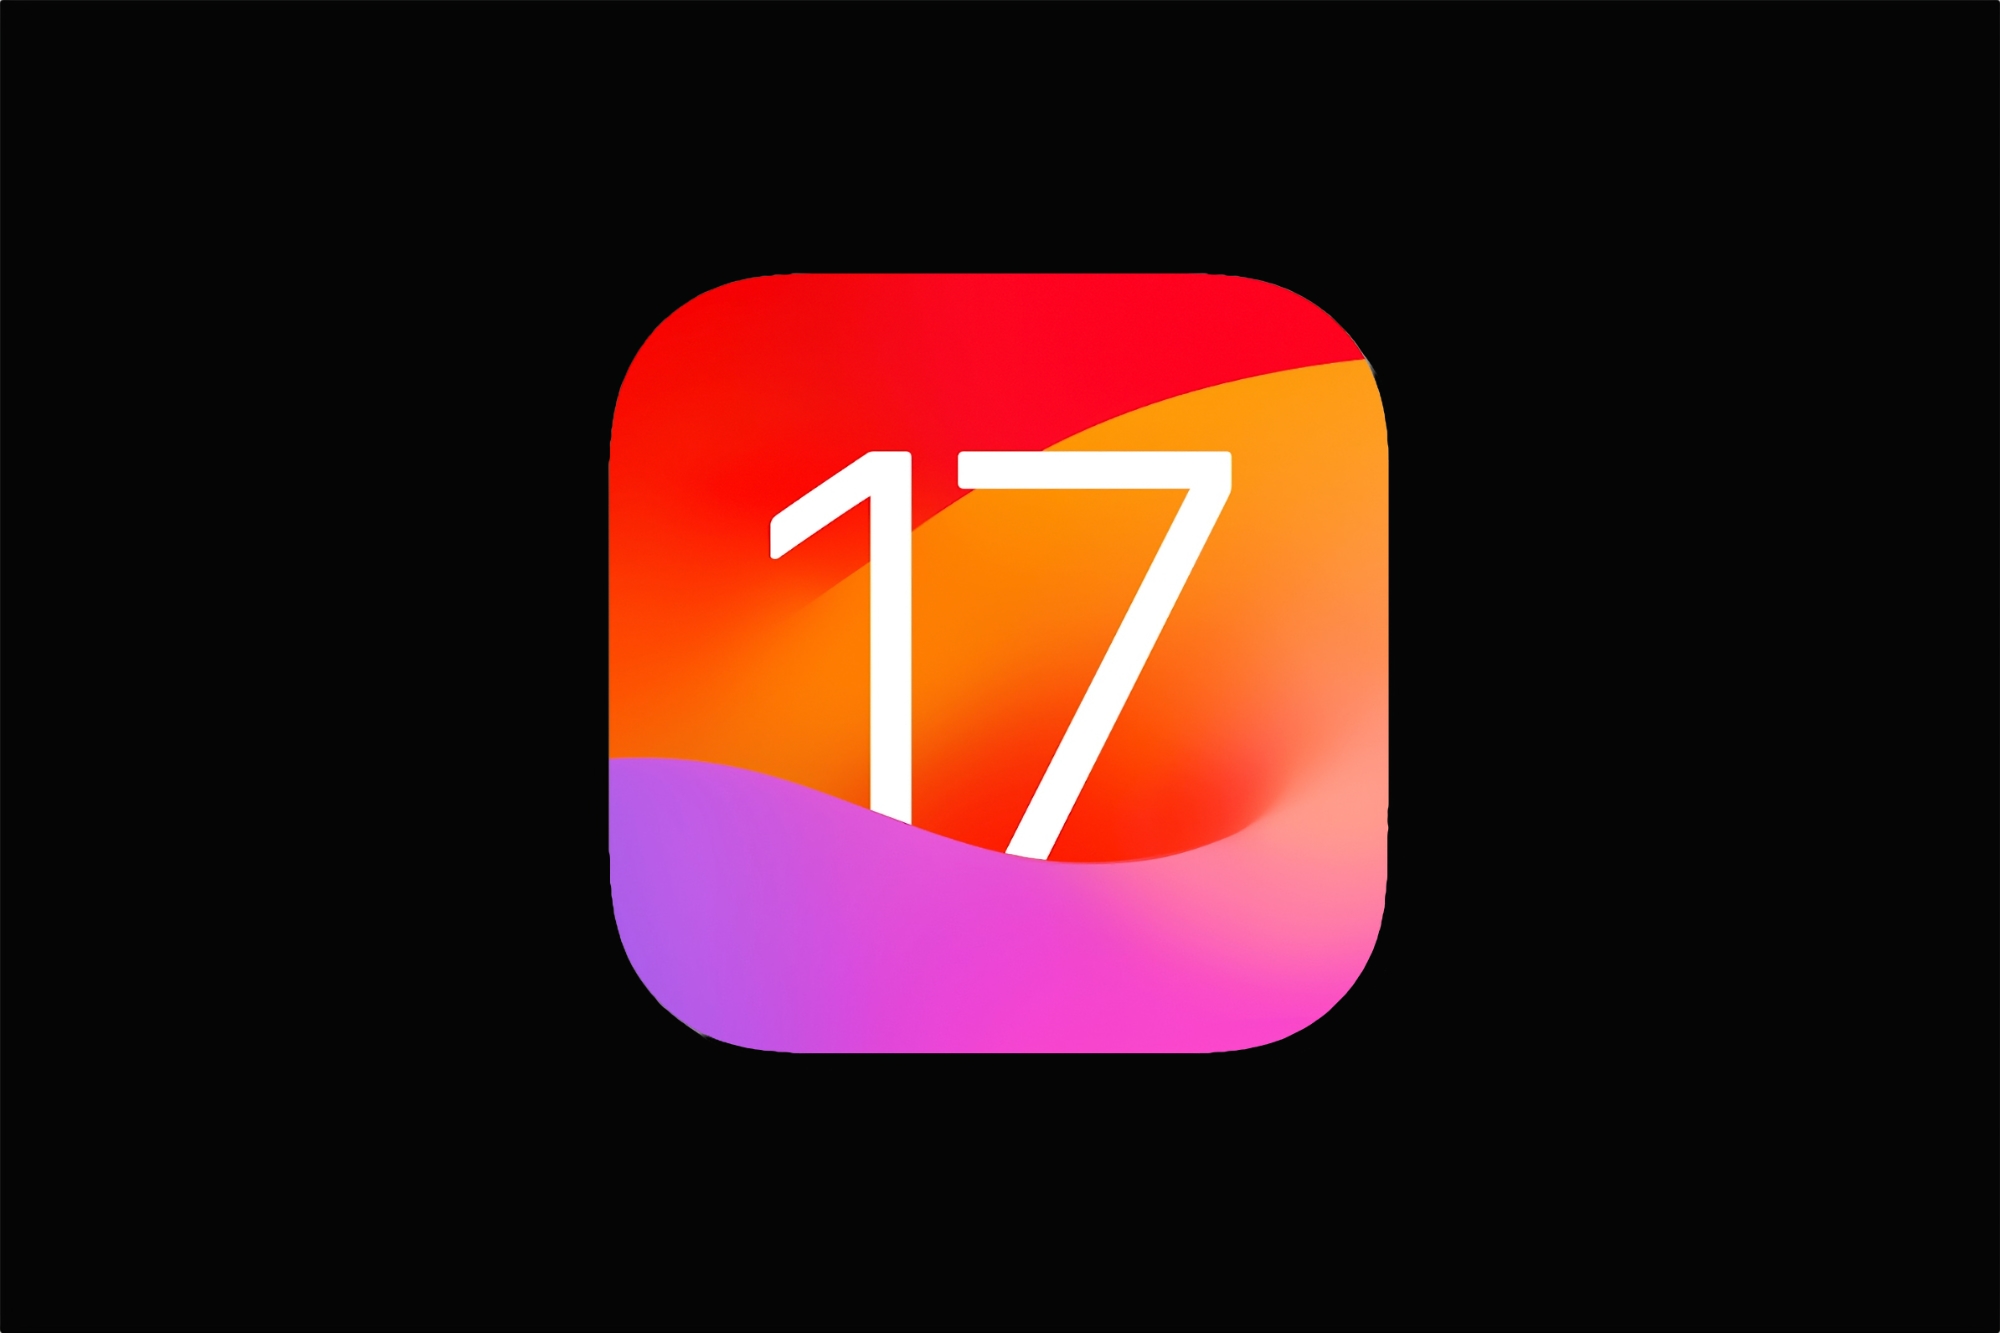 Apple lanza las primeras versiones beta de iOS 17 y iPadOS 17